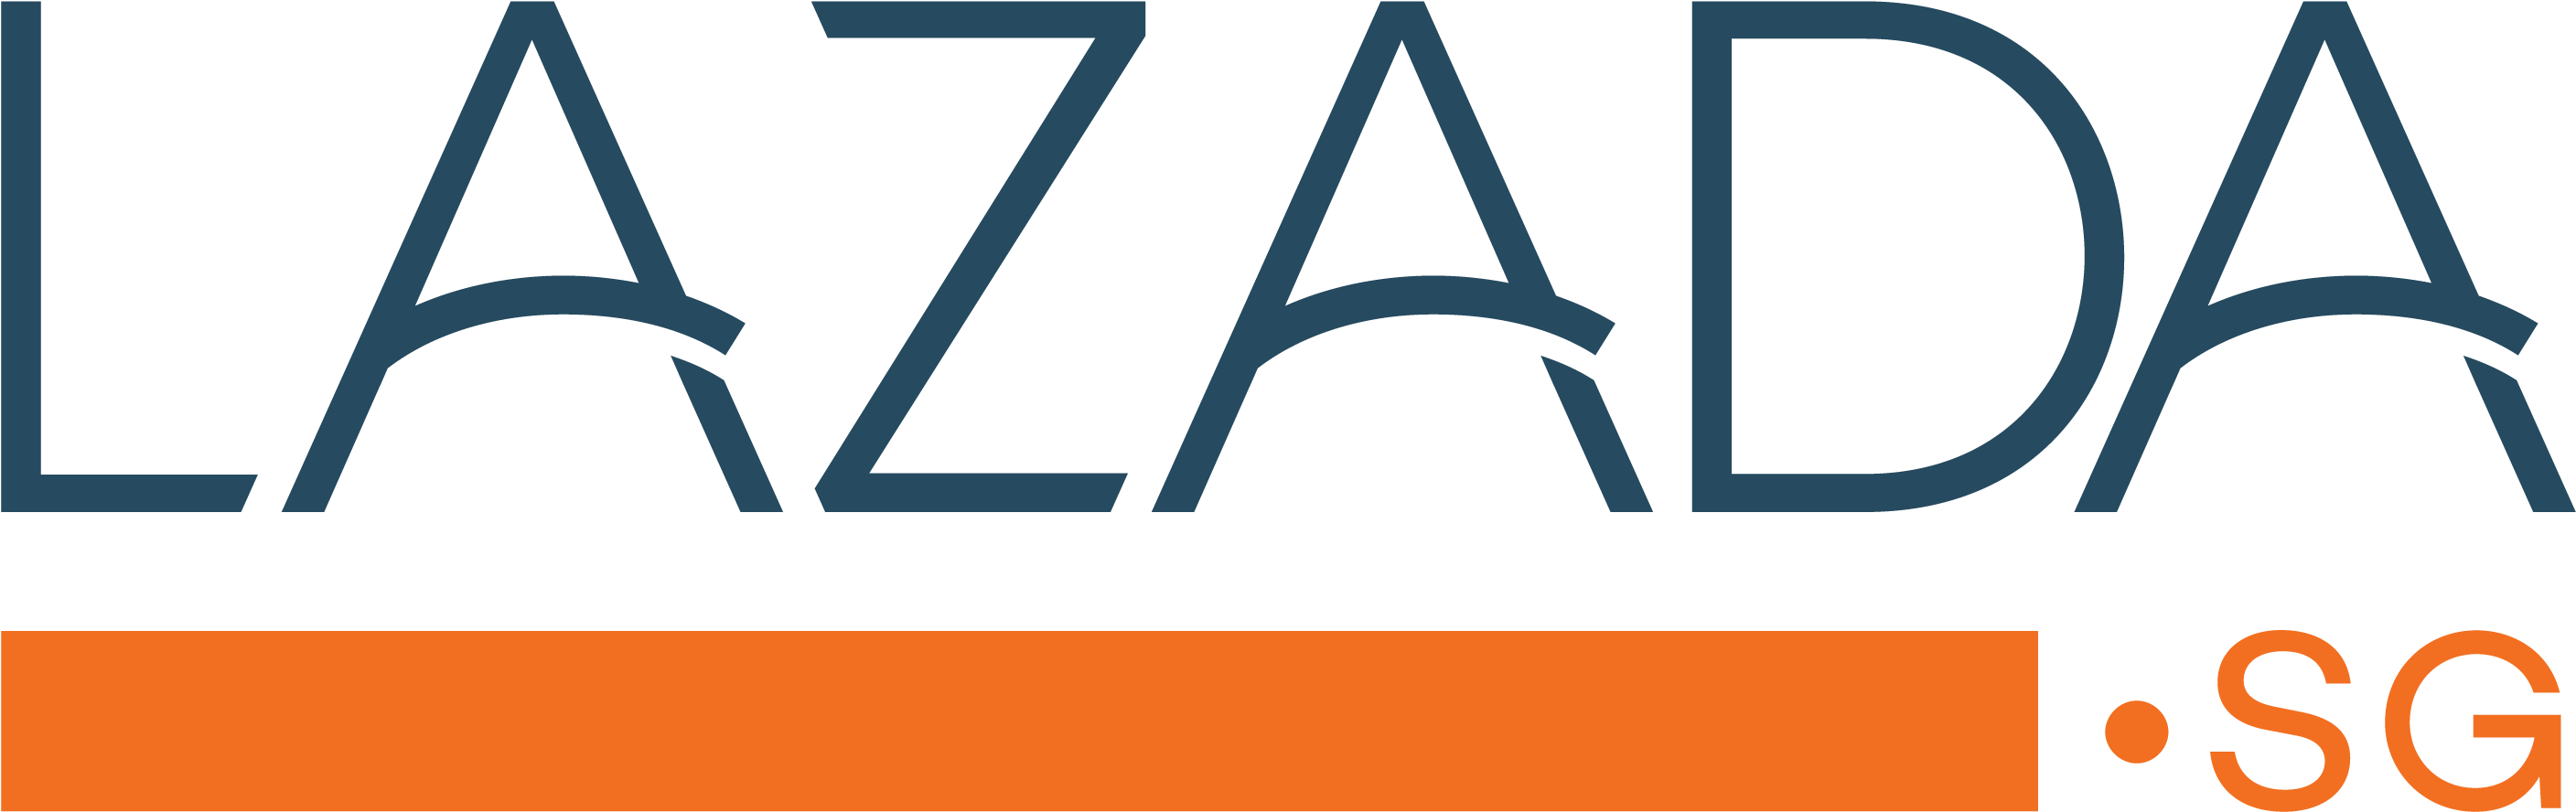 Lazada Ph Logo Png (3042x1275)